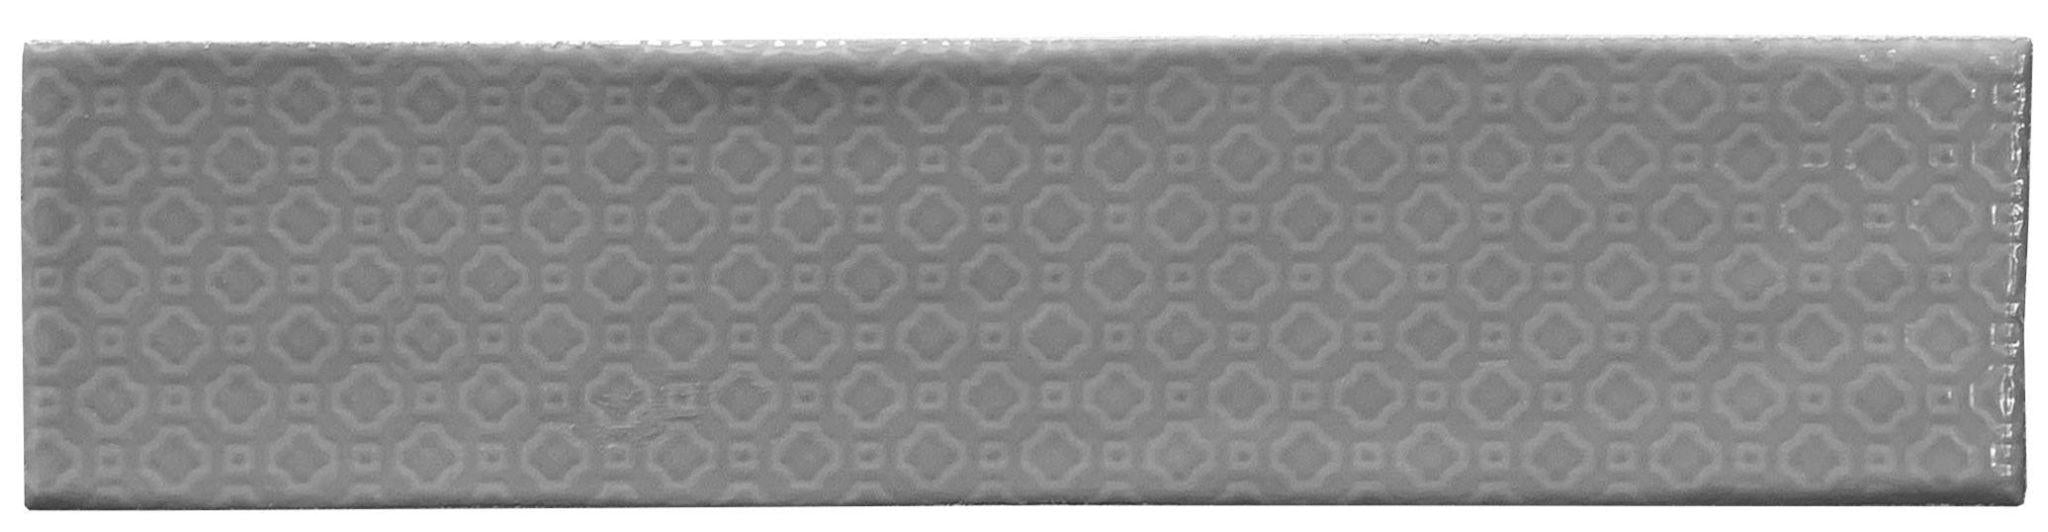 Zen Greige Multi Deco Glossy 3x12 Ceramic  Tile